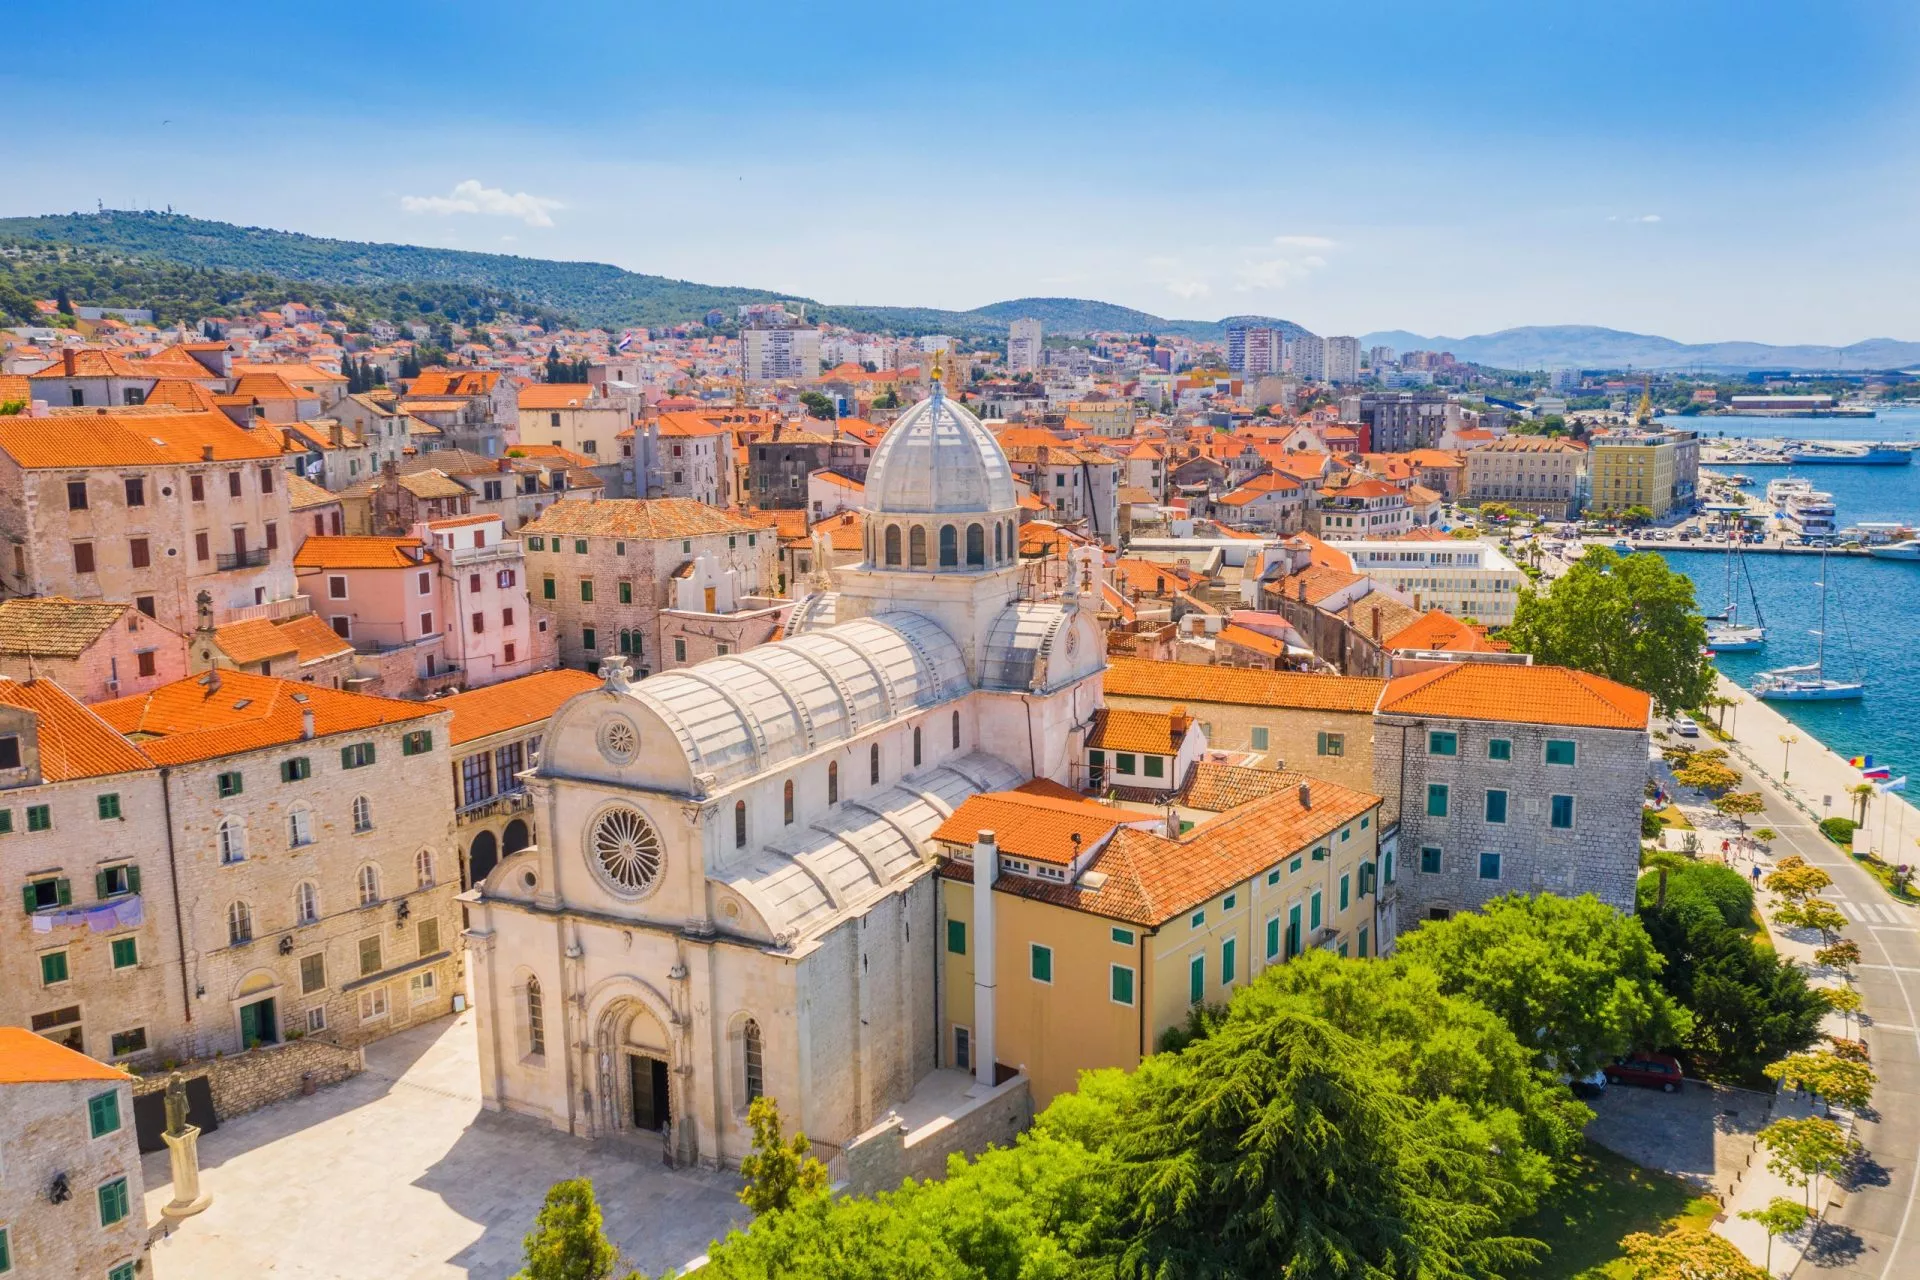 Croacia, ciudad de Sibenik, vista panorámica del casco antiguo y la catedral de Santiago, el monumento arquitectónico más importante del Renacimiento en Croacia, Patrimonio Mundial de la UNESCO